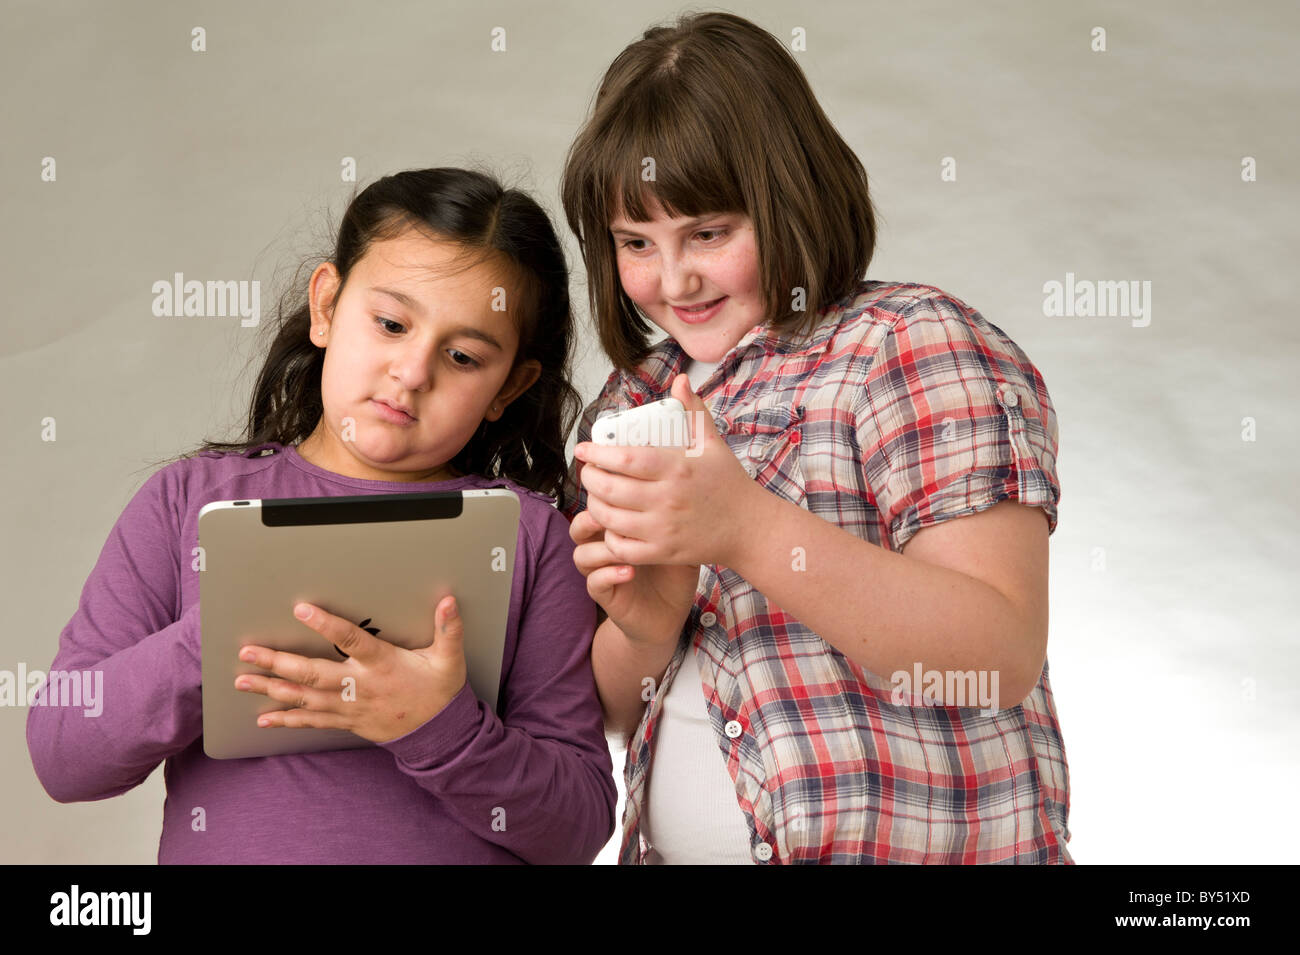 Zwei junge Freunde spielen elektronischer Spiele auf einem Touchscreen pad Stockfoto